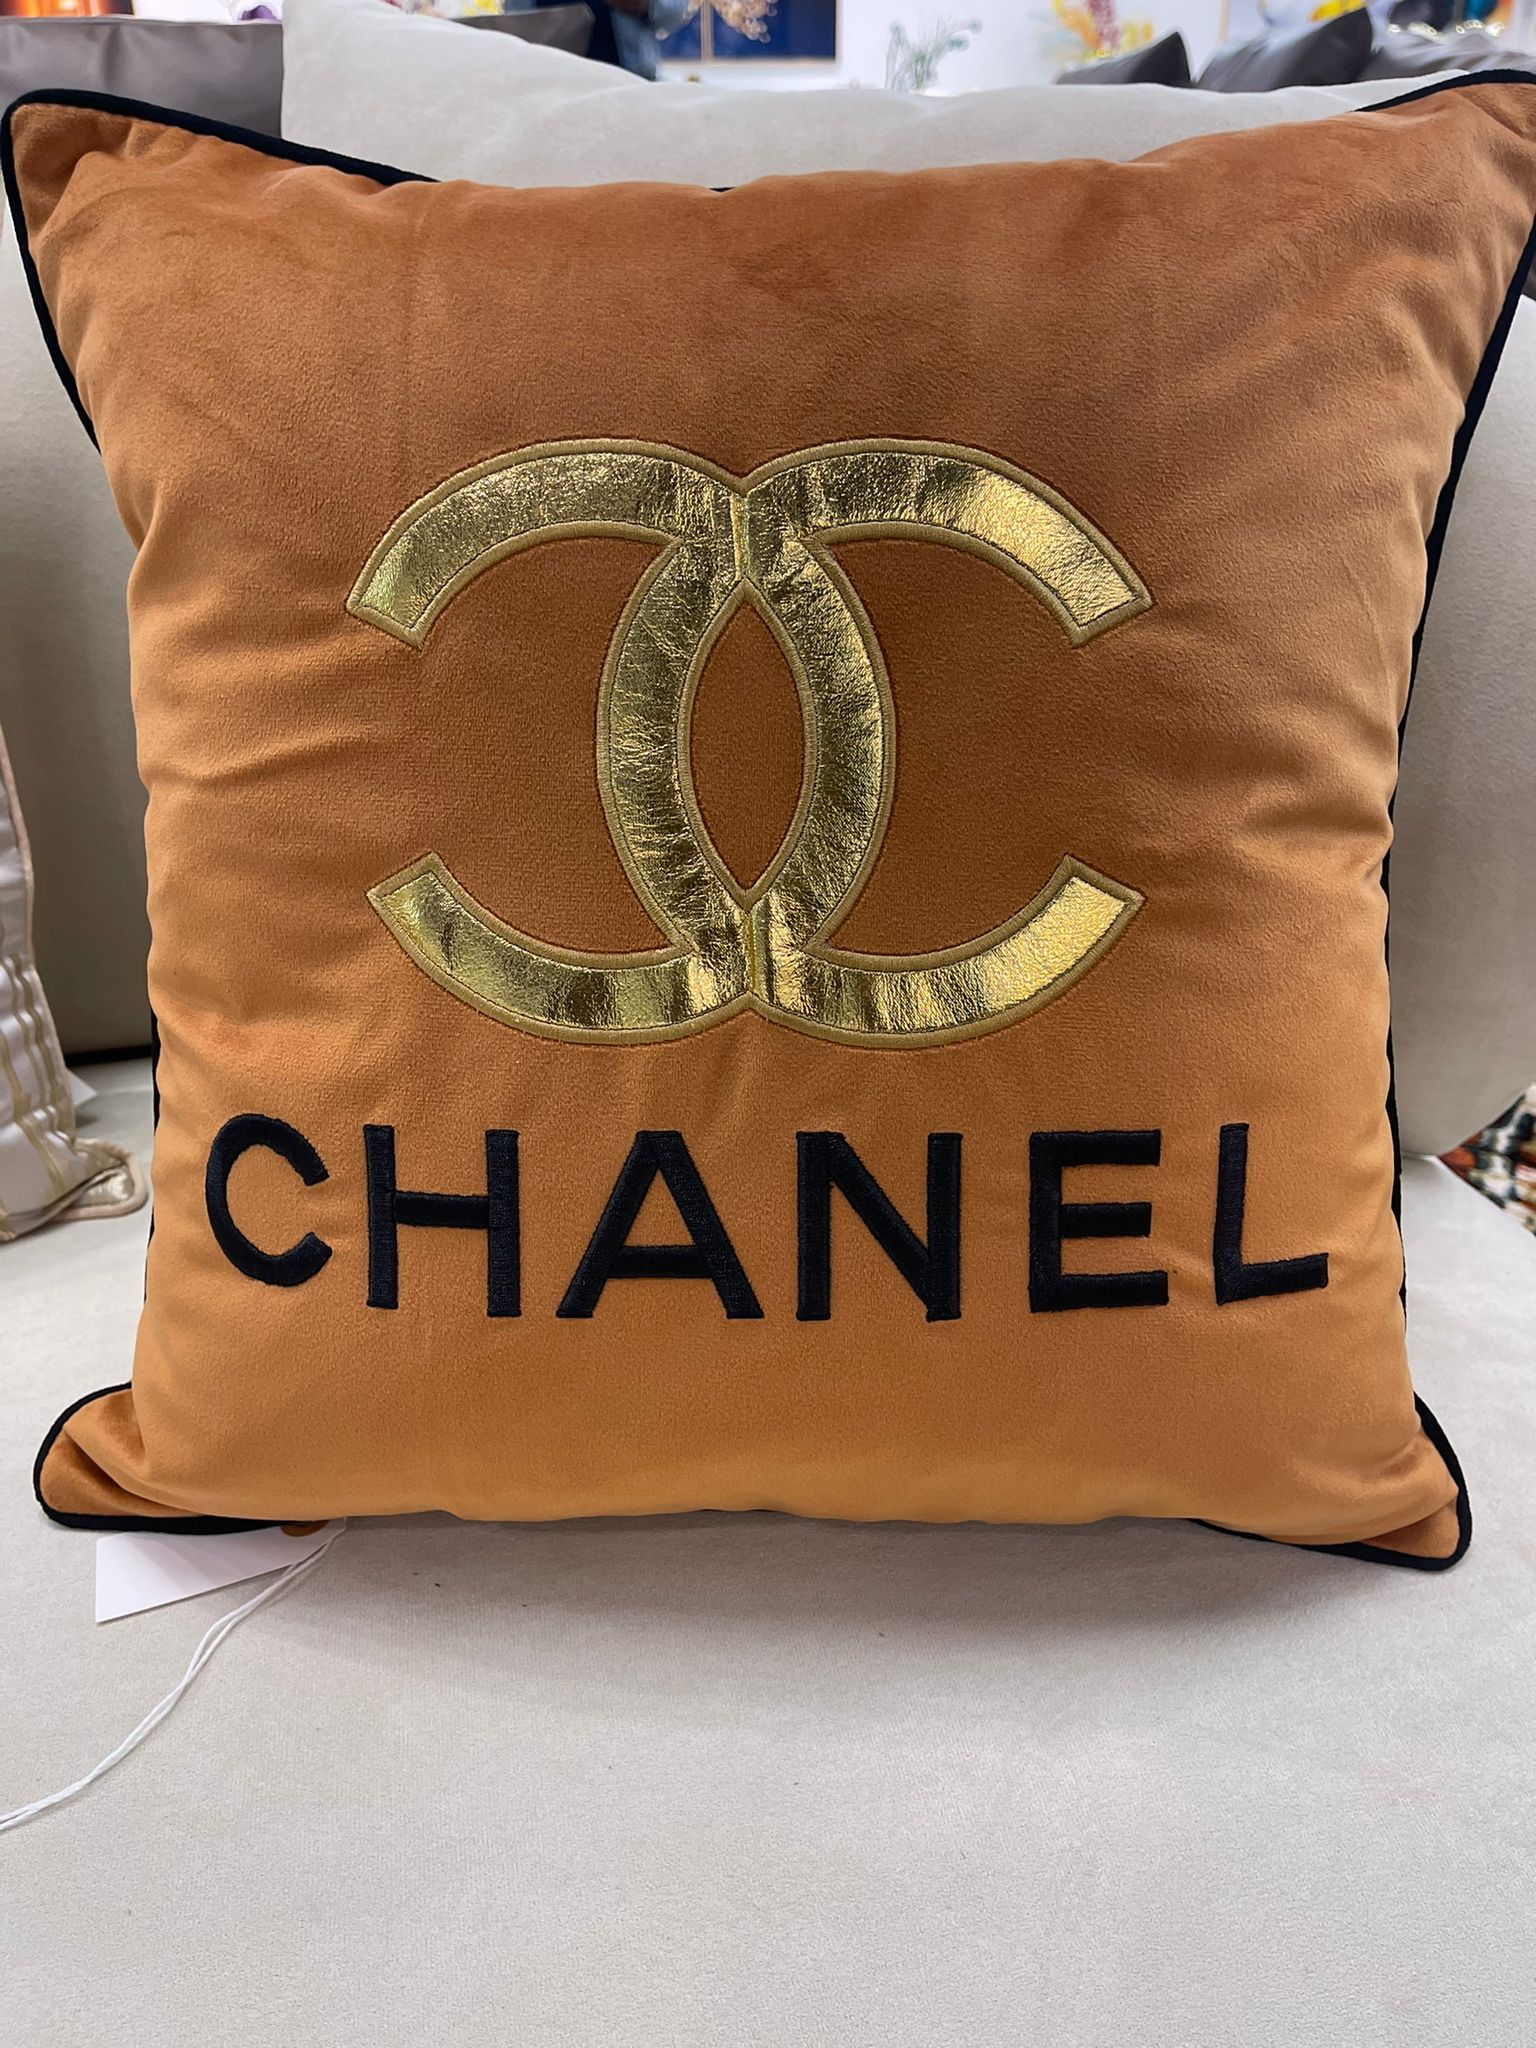 chanel cushion